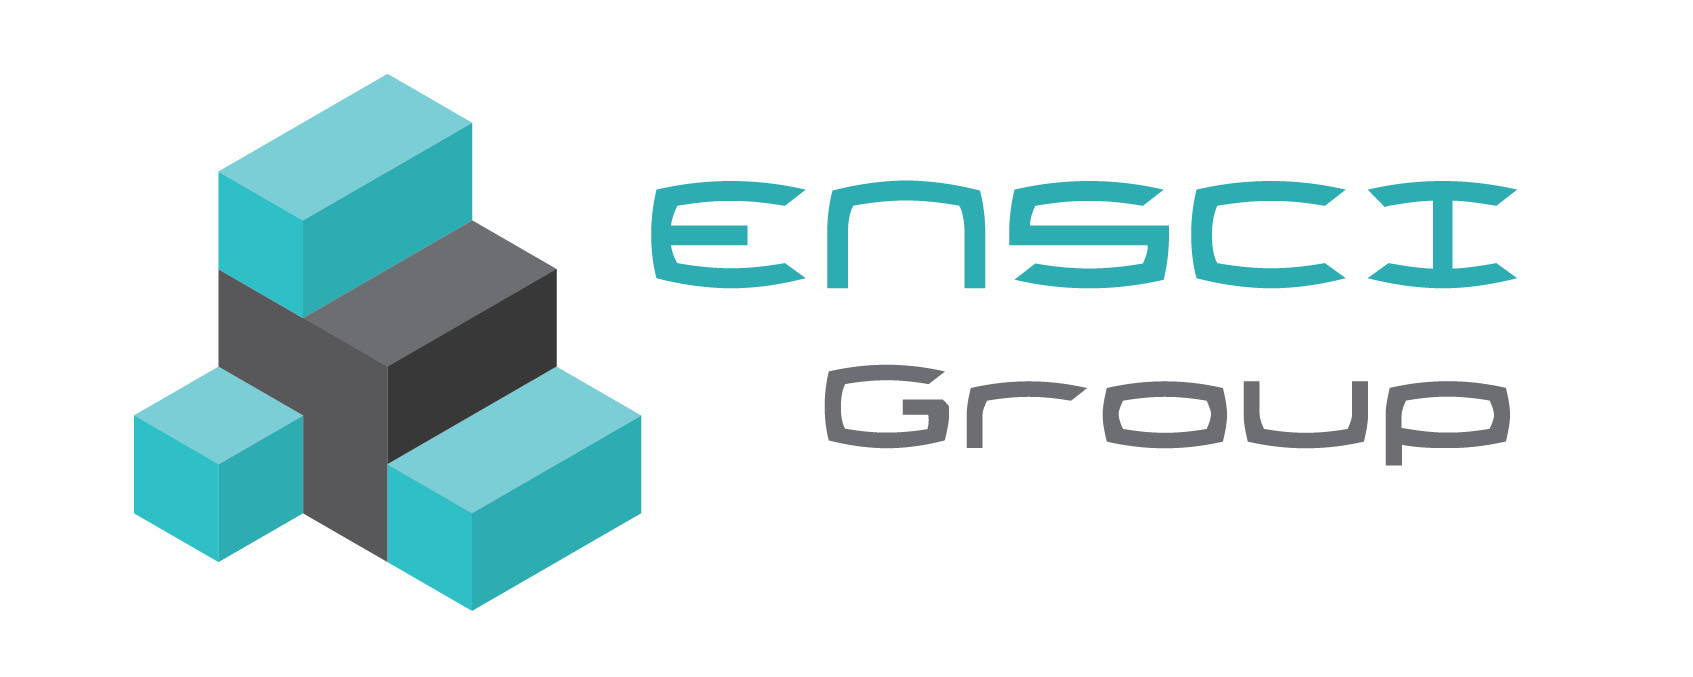 Ensci Group Co., Ltd., บริษัท เอ็นไซ กรุ๊ป จำกัด